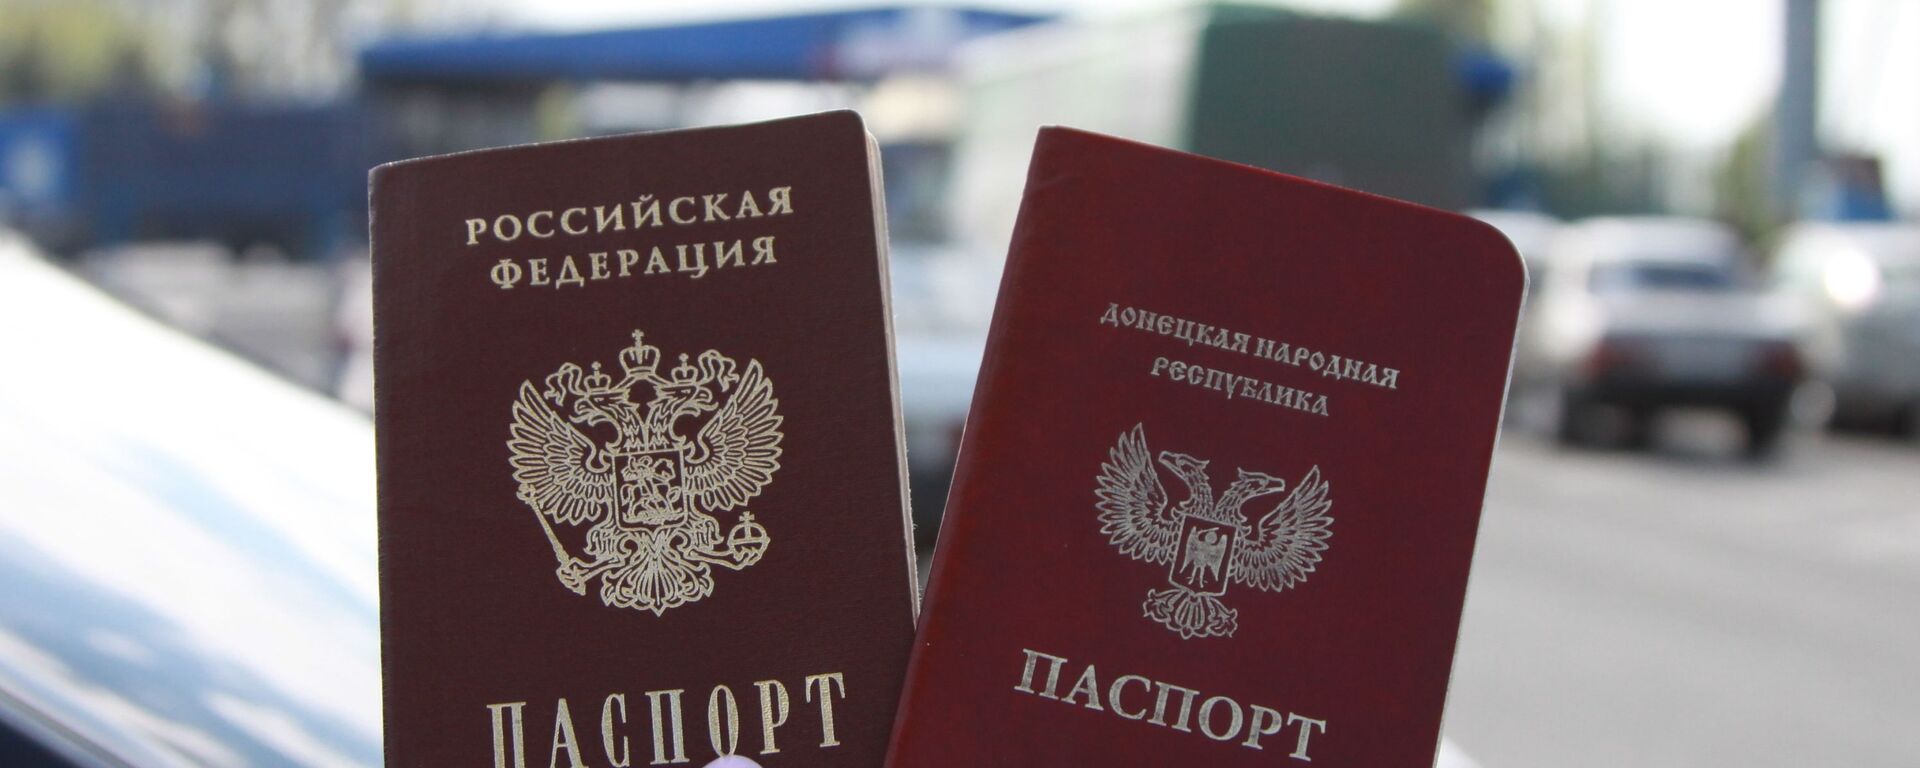 Граждане ЛНР и ДНР смогут получить паспорта РФ по упрощенной процедуре - Sputnik Абхазия, 1920, 27.08.2022